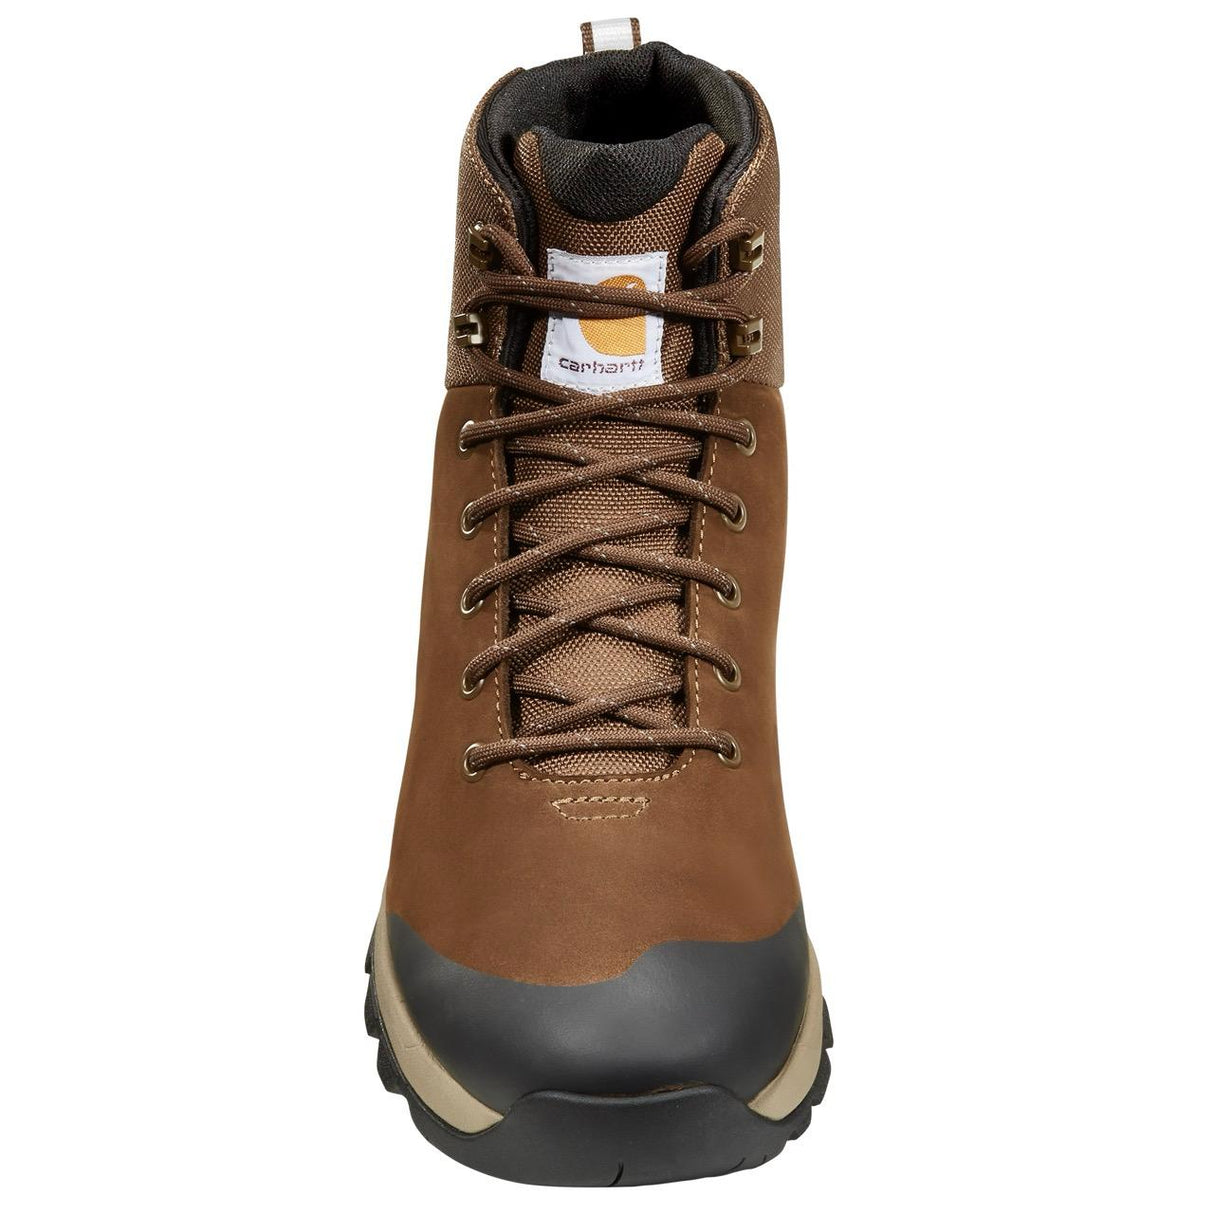 Carhartt-Carhartt Outdoor Wp 5" Alloy Toe Dark Brown Hiker Boot-Steel Toes-6